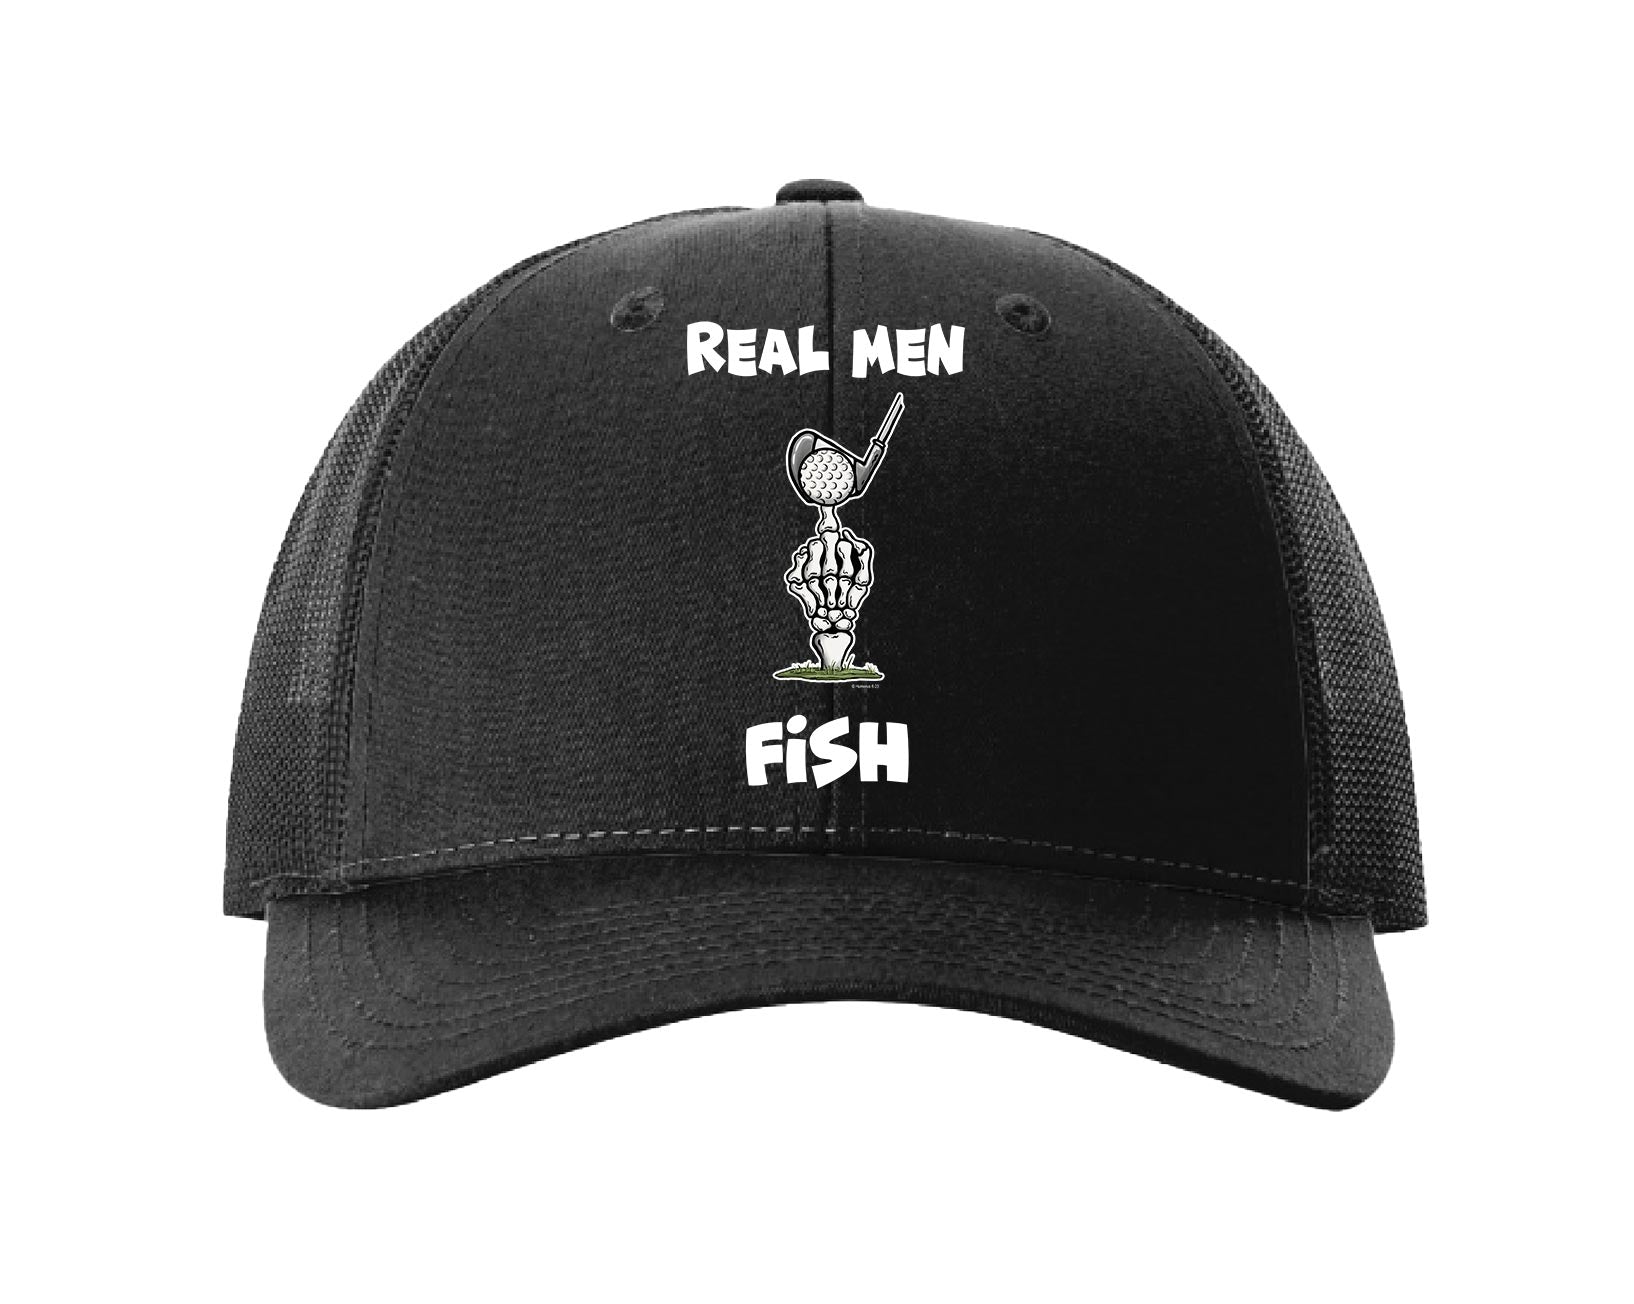 Real Men Fish - Low Profile Trucker Hat Med-Lge / Black / Black Mesh / Cotton-Poly/Nylon Mesh